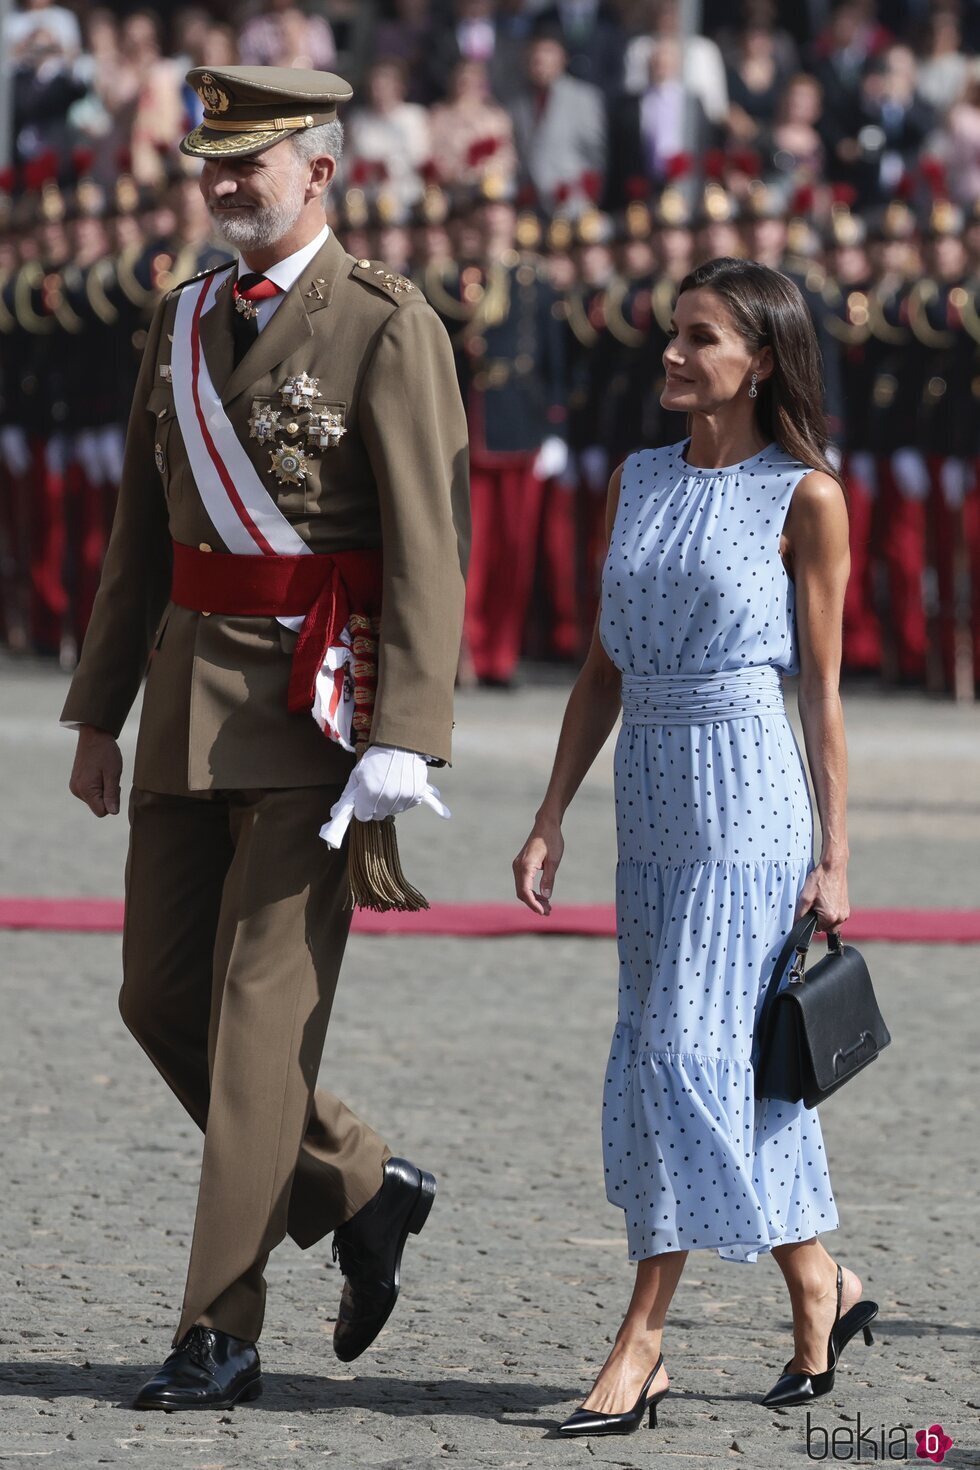 Los Reyes Felipe y Letizia, muy sonrientes en la Jura de Bandera de la Princesa Leonor